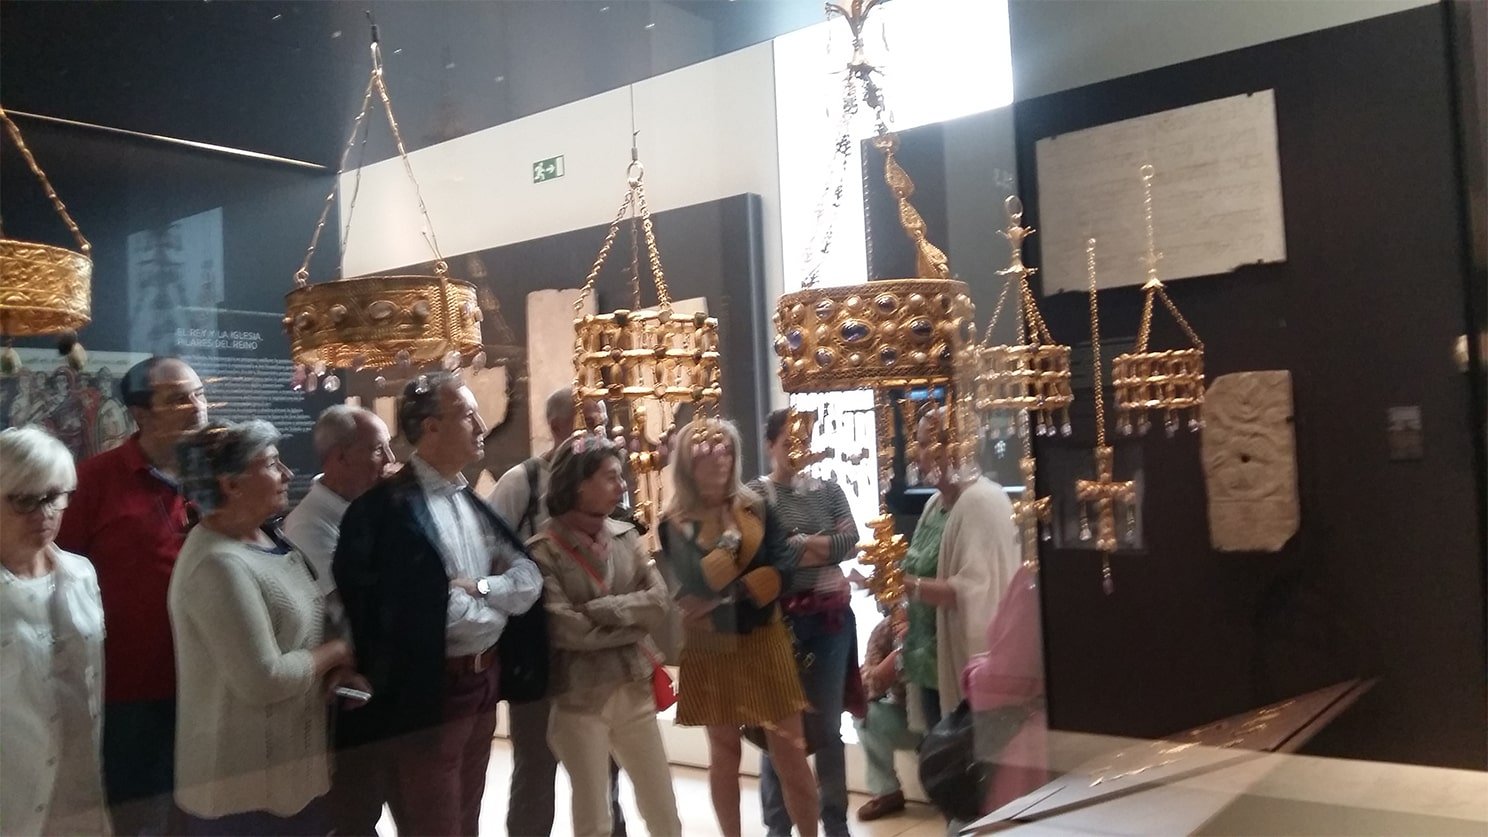 Visita al tesoro de los visigodos del Museo Arqueológico Nacional - Orígenes de Europa